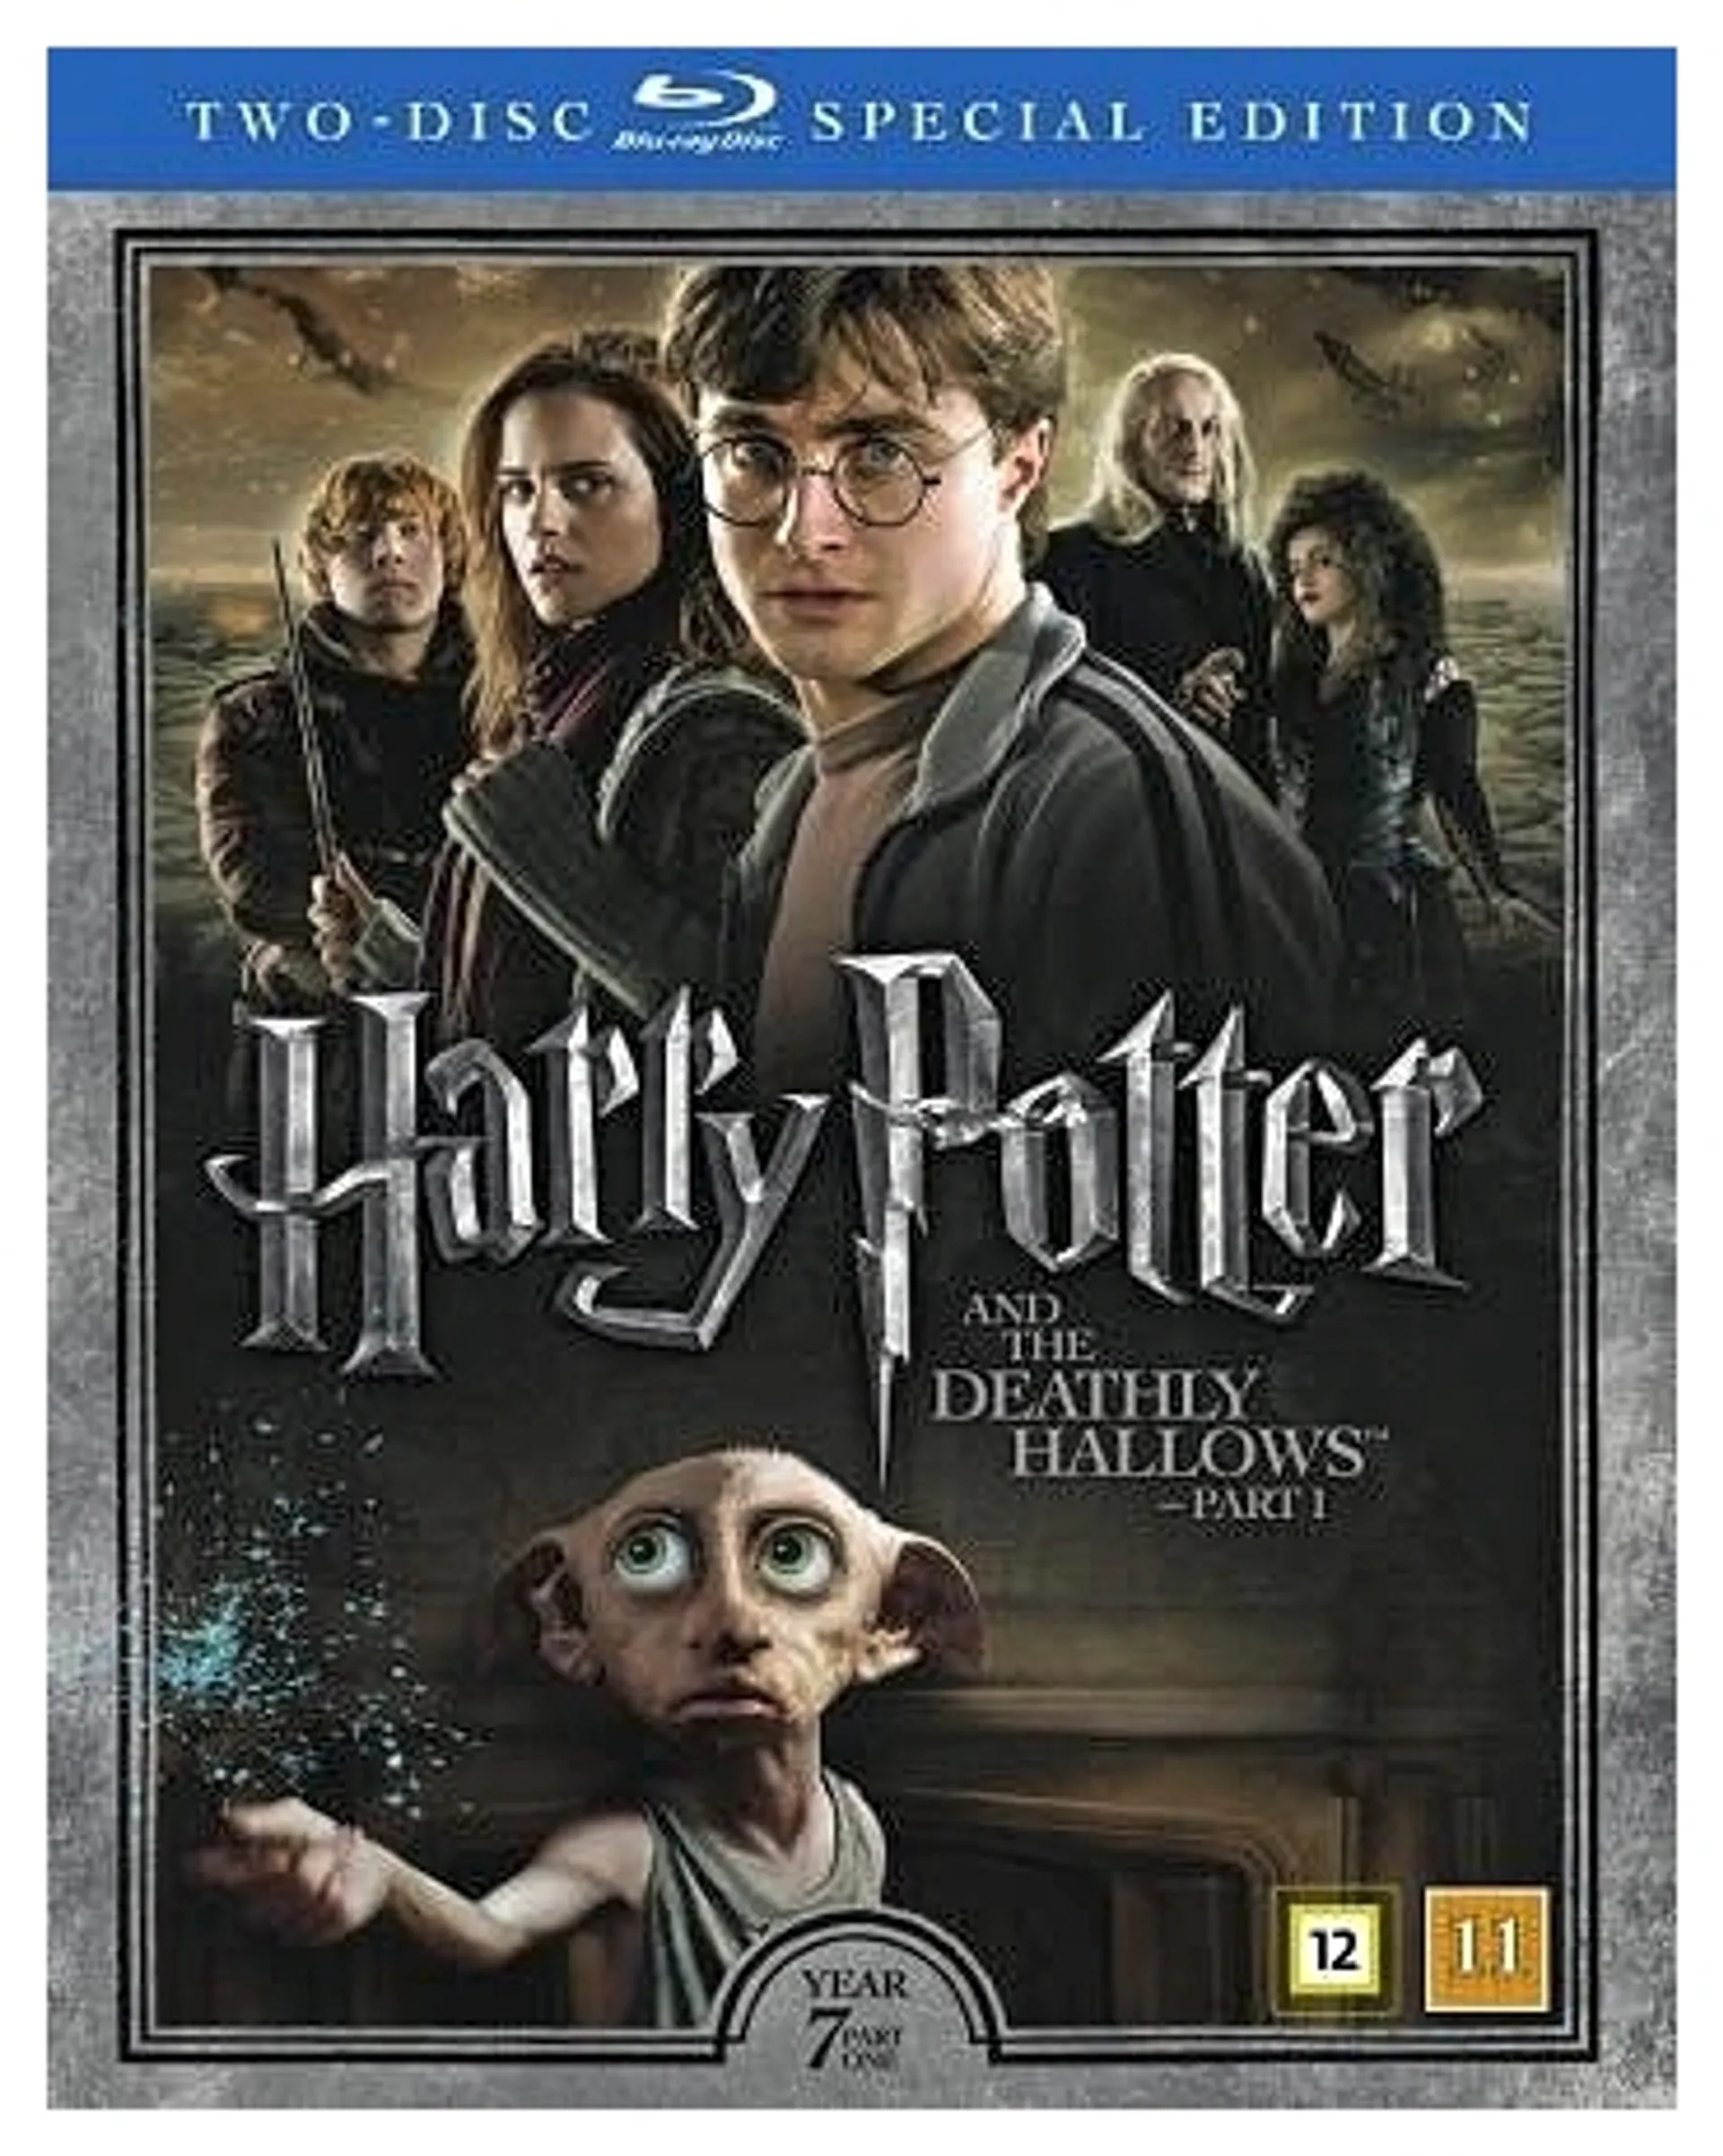 Harry Potter ja kuoleman varjelukset osa 1 + Dokumentti 2Blu-ray